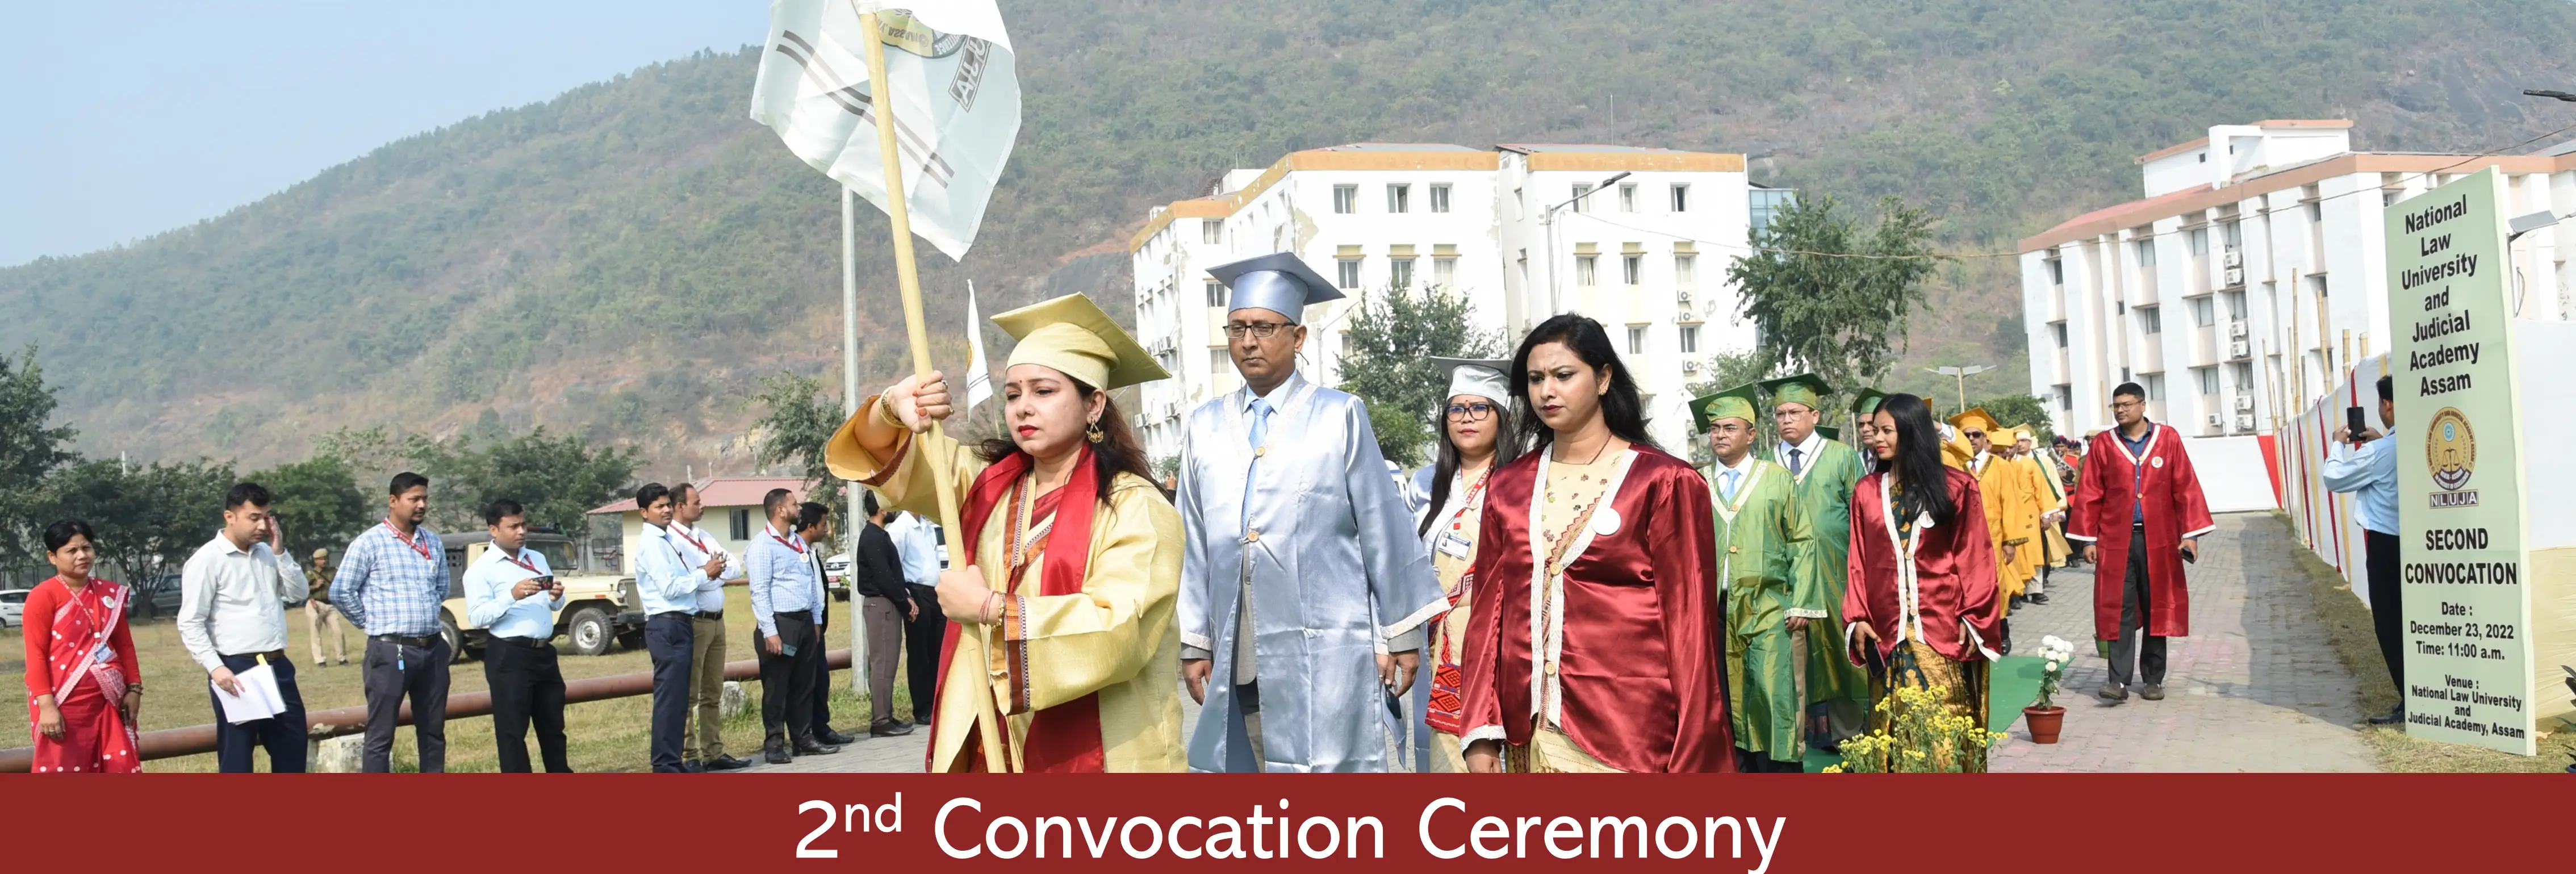 Convocation Ceremony, NLUJA, Assam